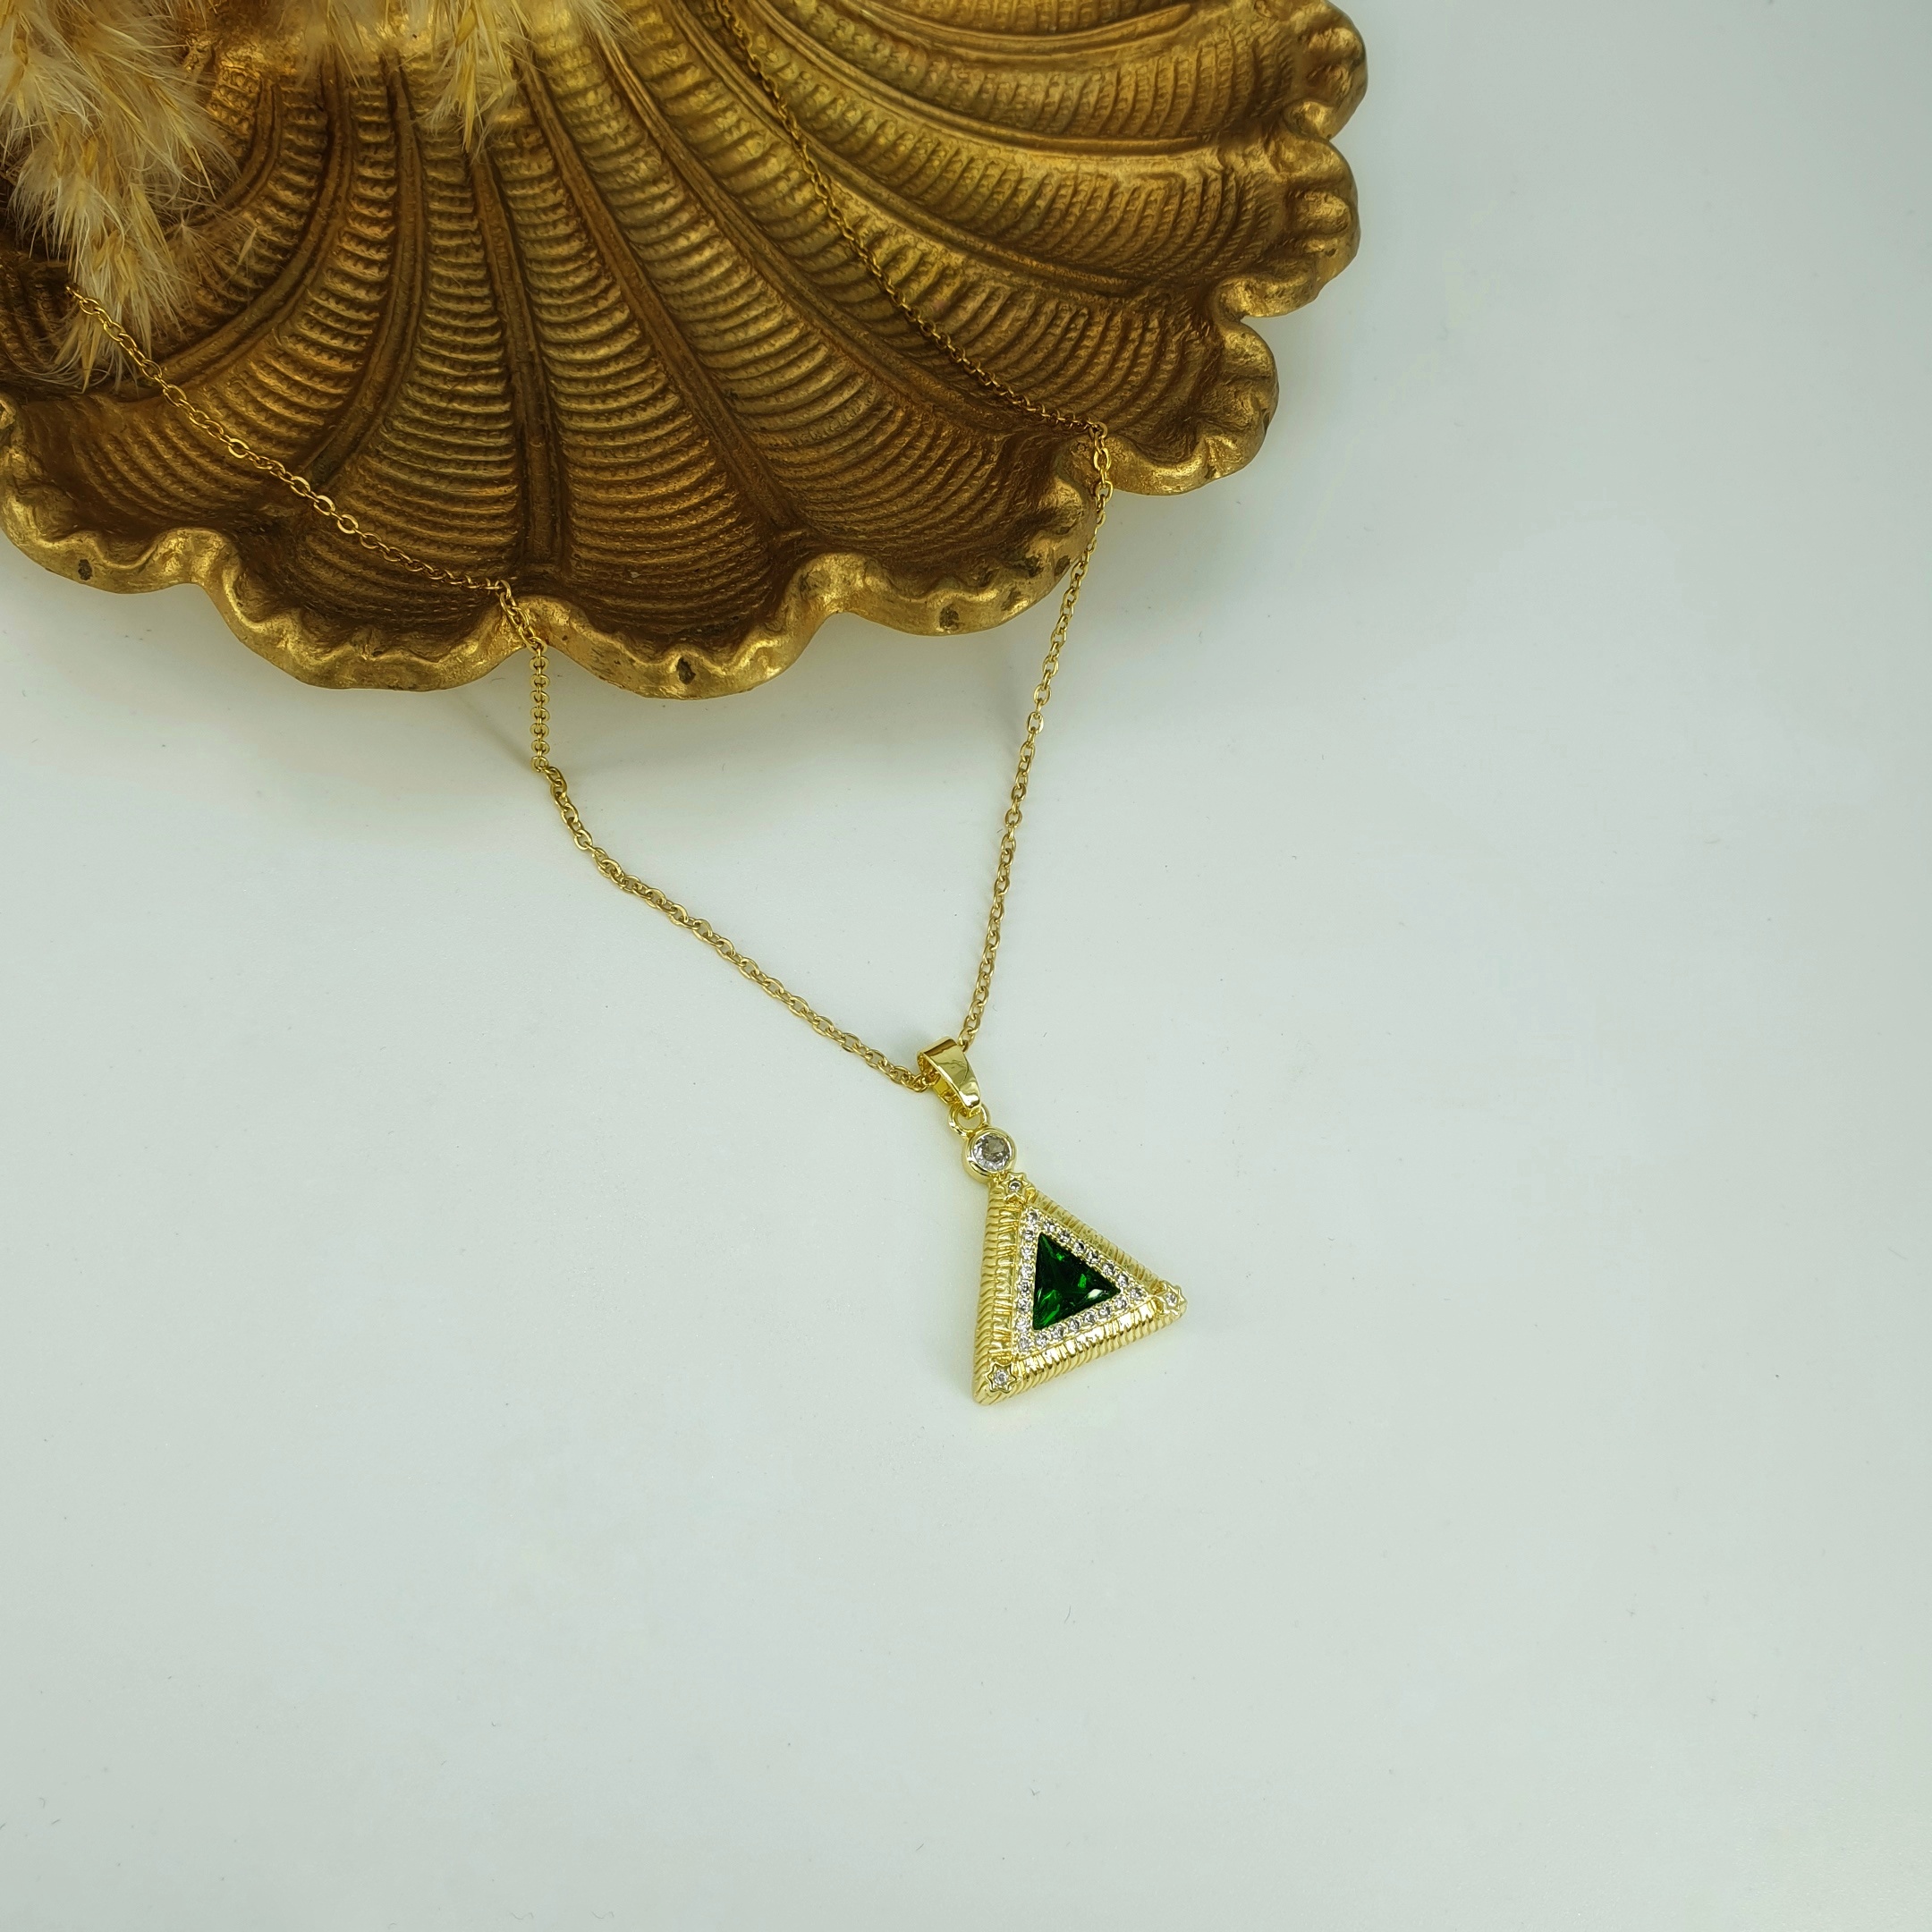 Υλικό : Ατσάλι Χρώμα : Χρυσό Πέτρες Ζιργκόν : Διάφανες + πράσινο Διαστάσεις : 40 cm + 5 cm 